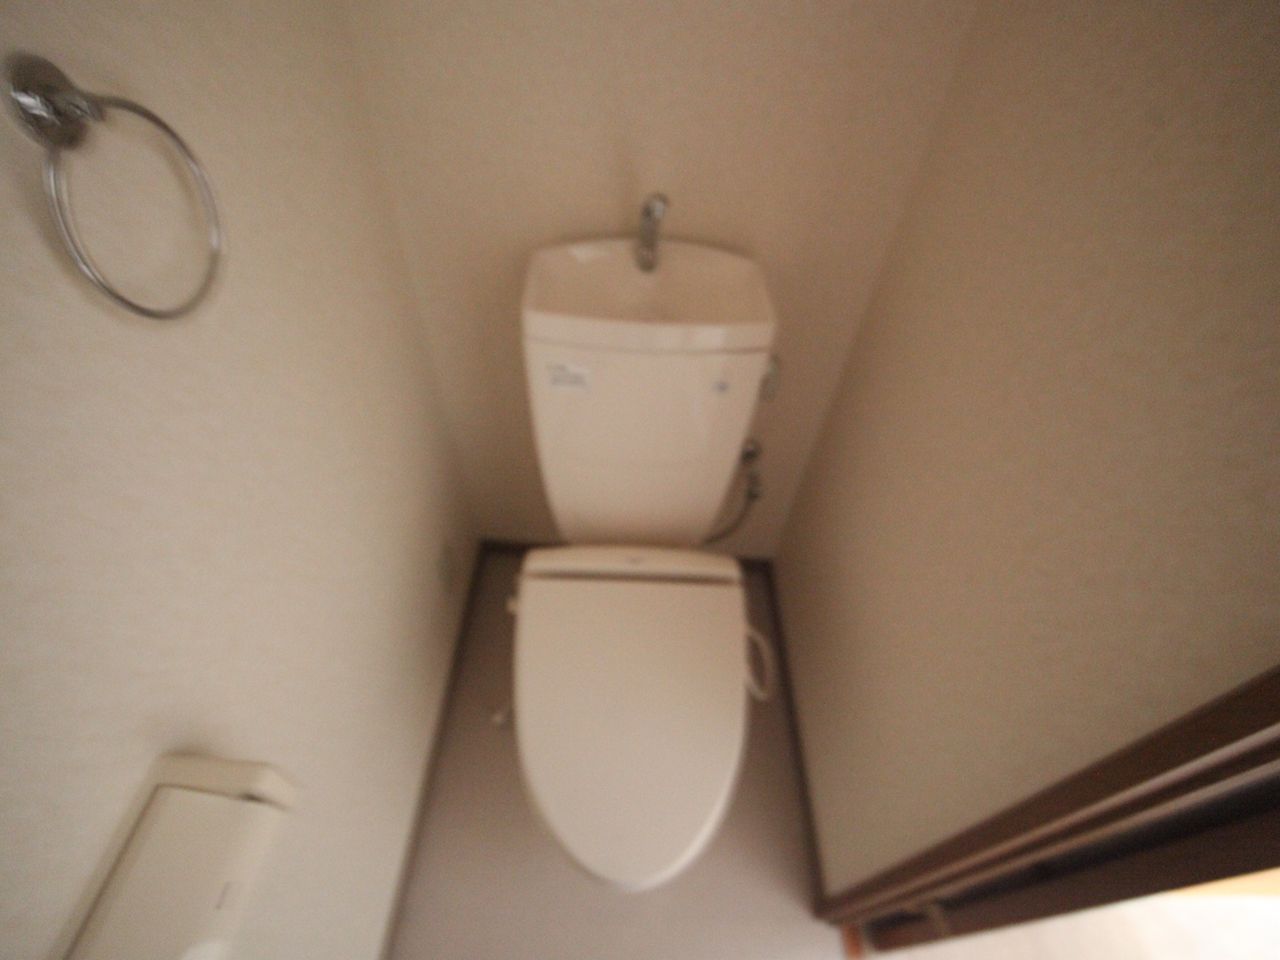 Toilet. Toilet ((bath separate toilet) warm water washing toilet seat mounting Allowed